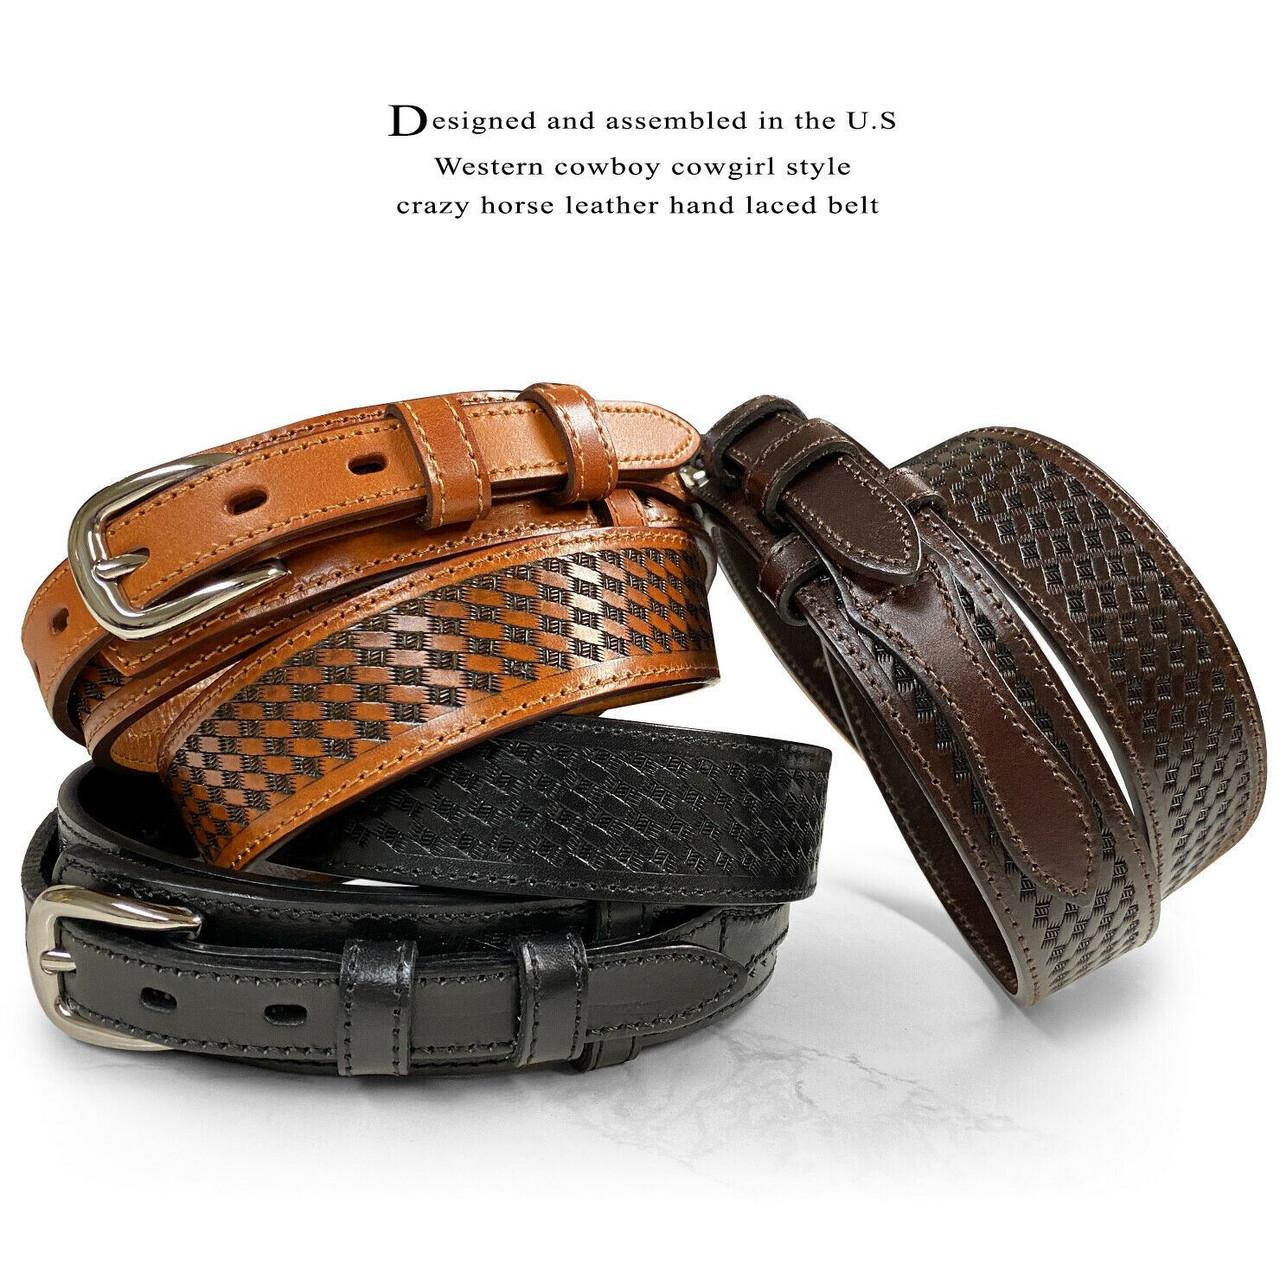 Leather Belt, Engraved Leather Belt, Embossed Basket Weave Belt, Hand Made  Belt for Men, Men's Accessories 